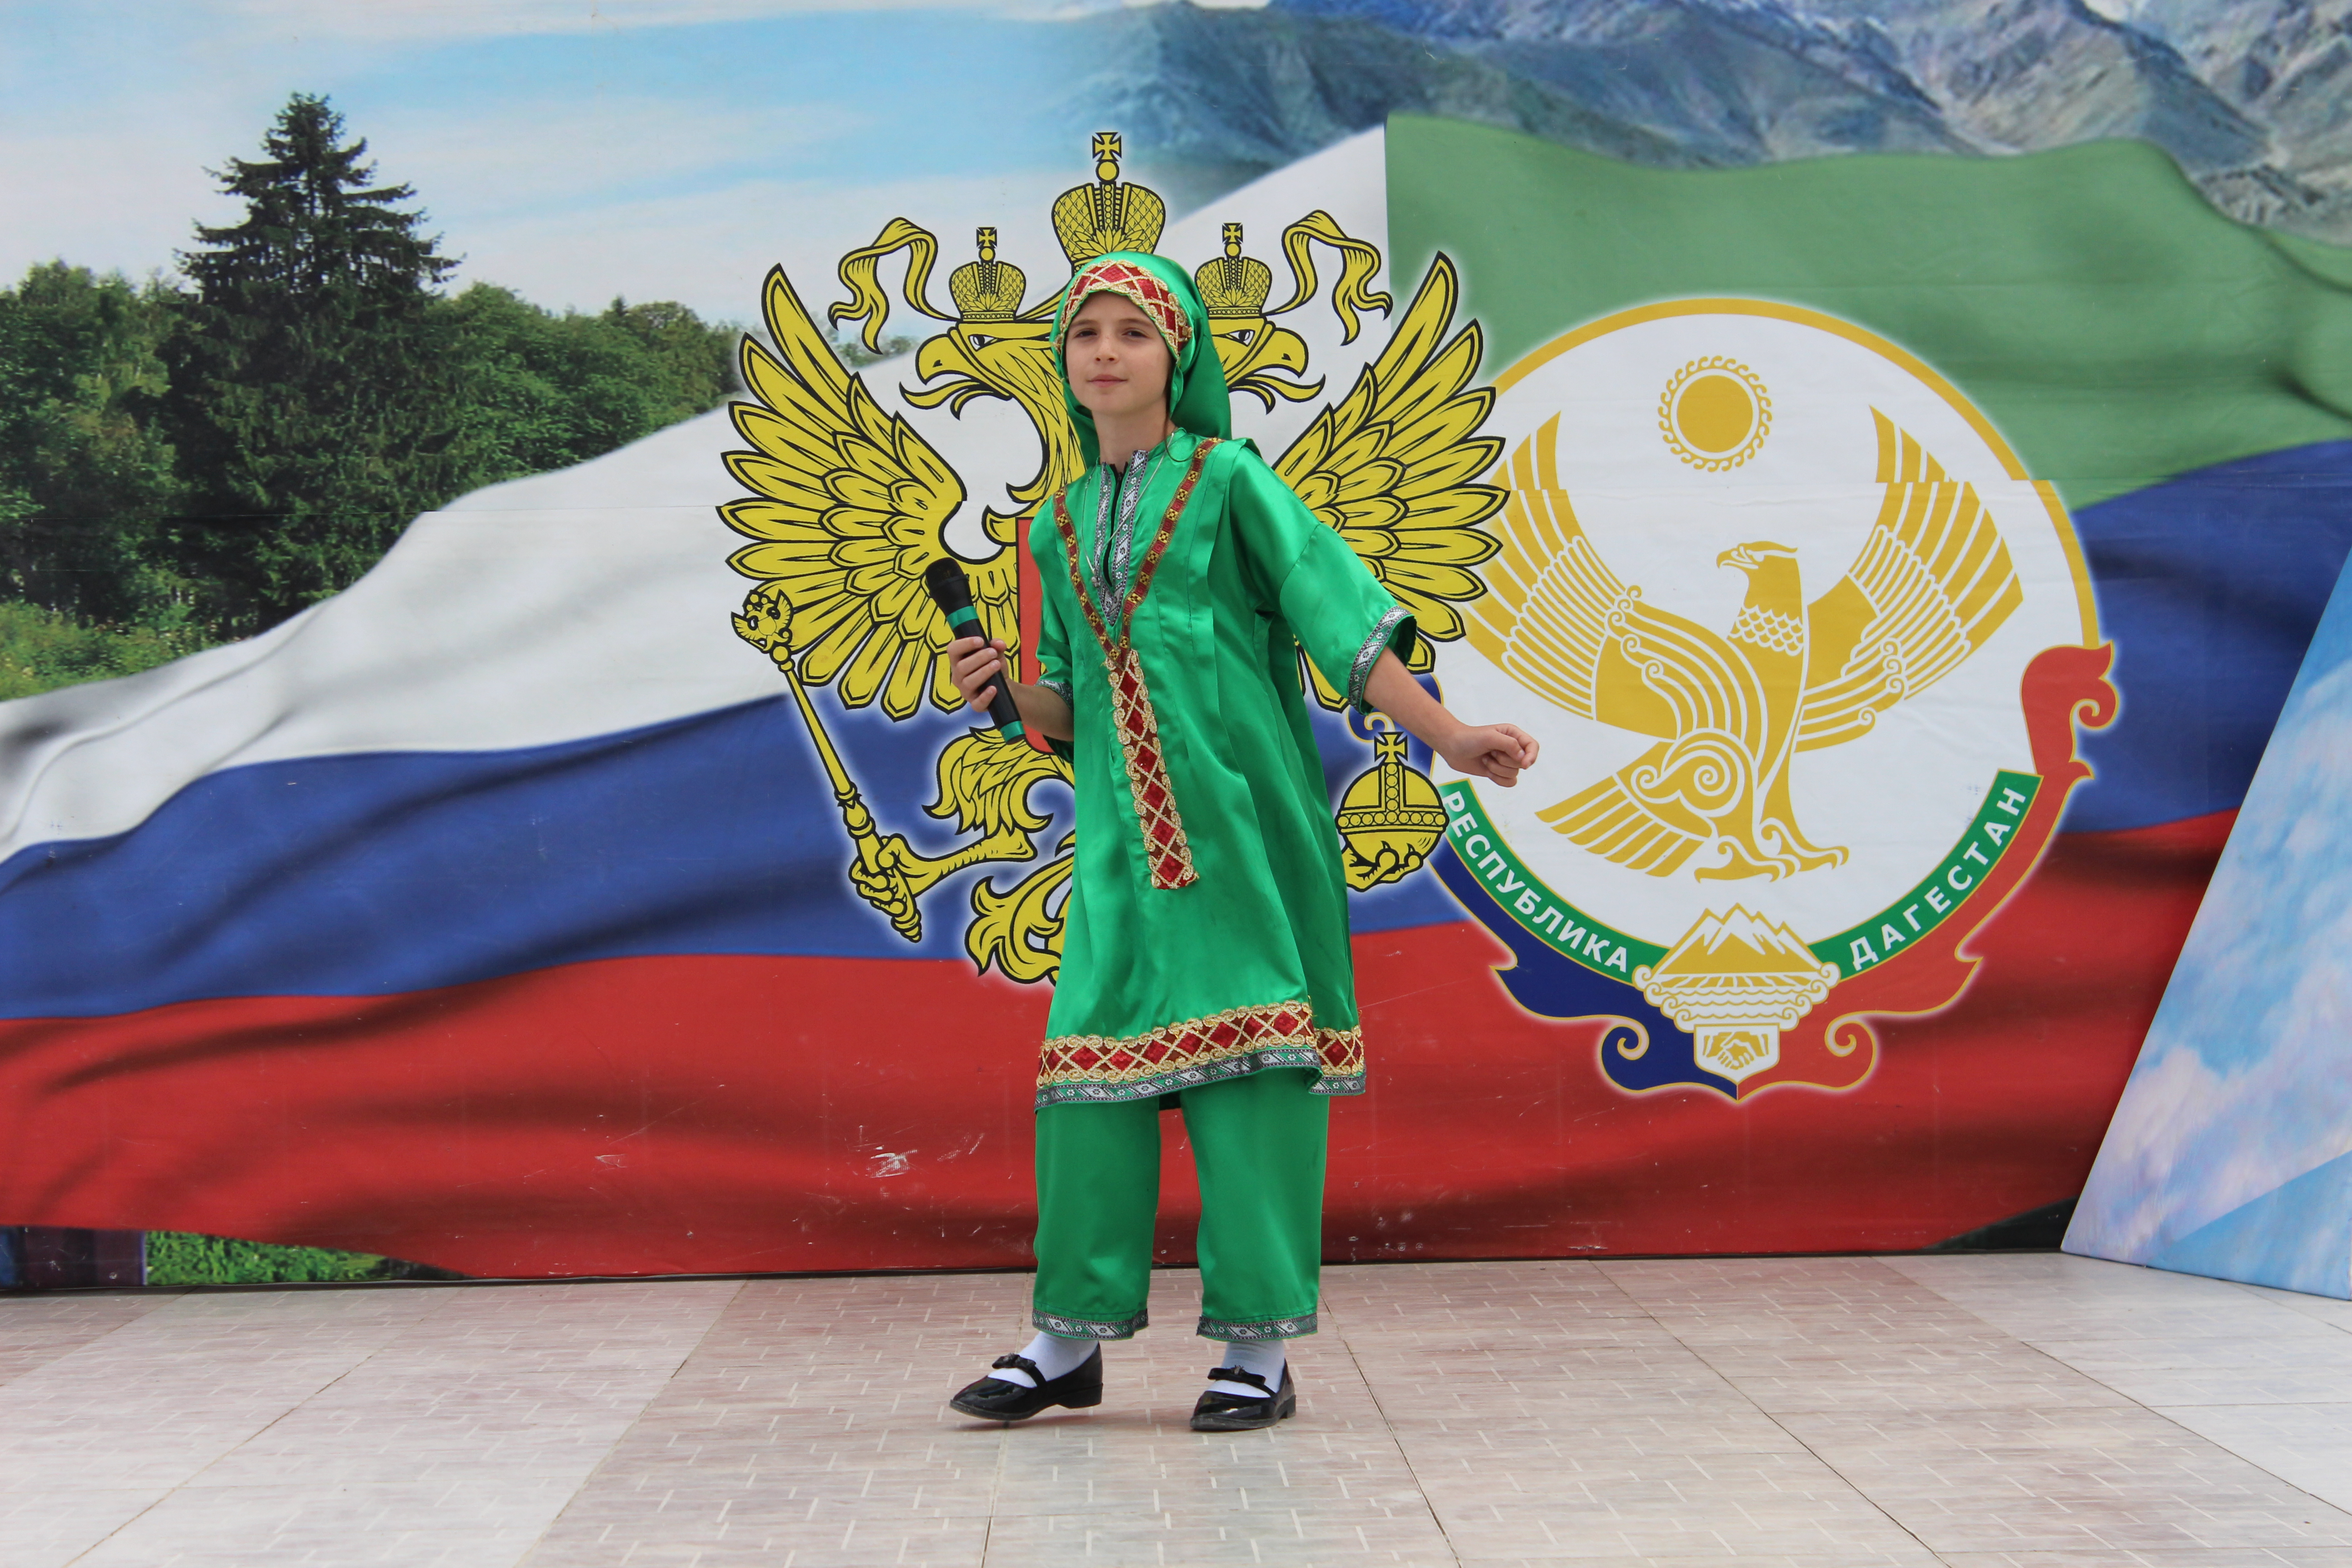 Единство народов Дагестана